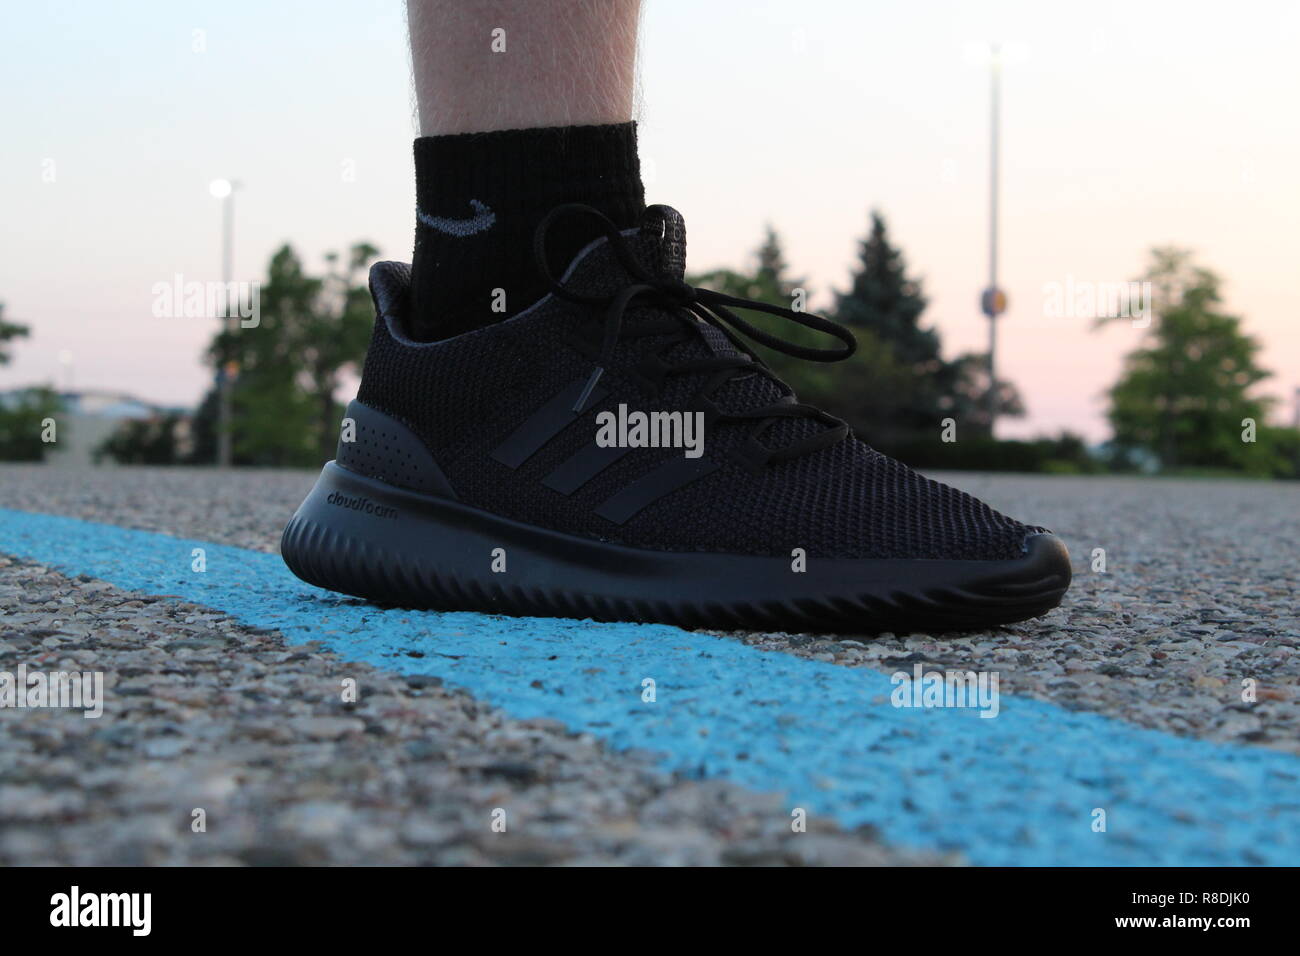 Cloudfoam adidas chaussures de sport ultime sur la chaussée Photo Stock -  Alamy